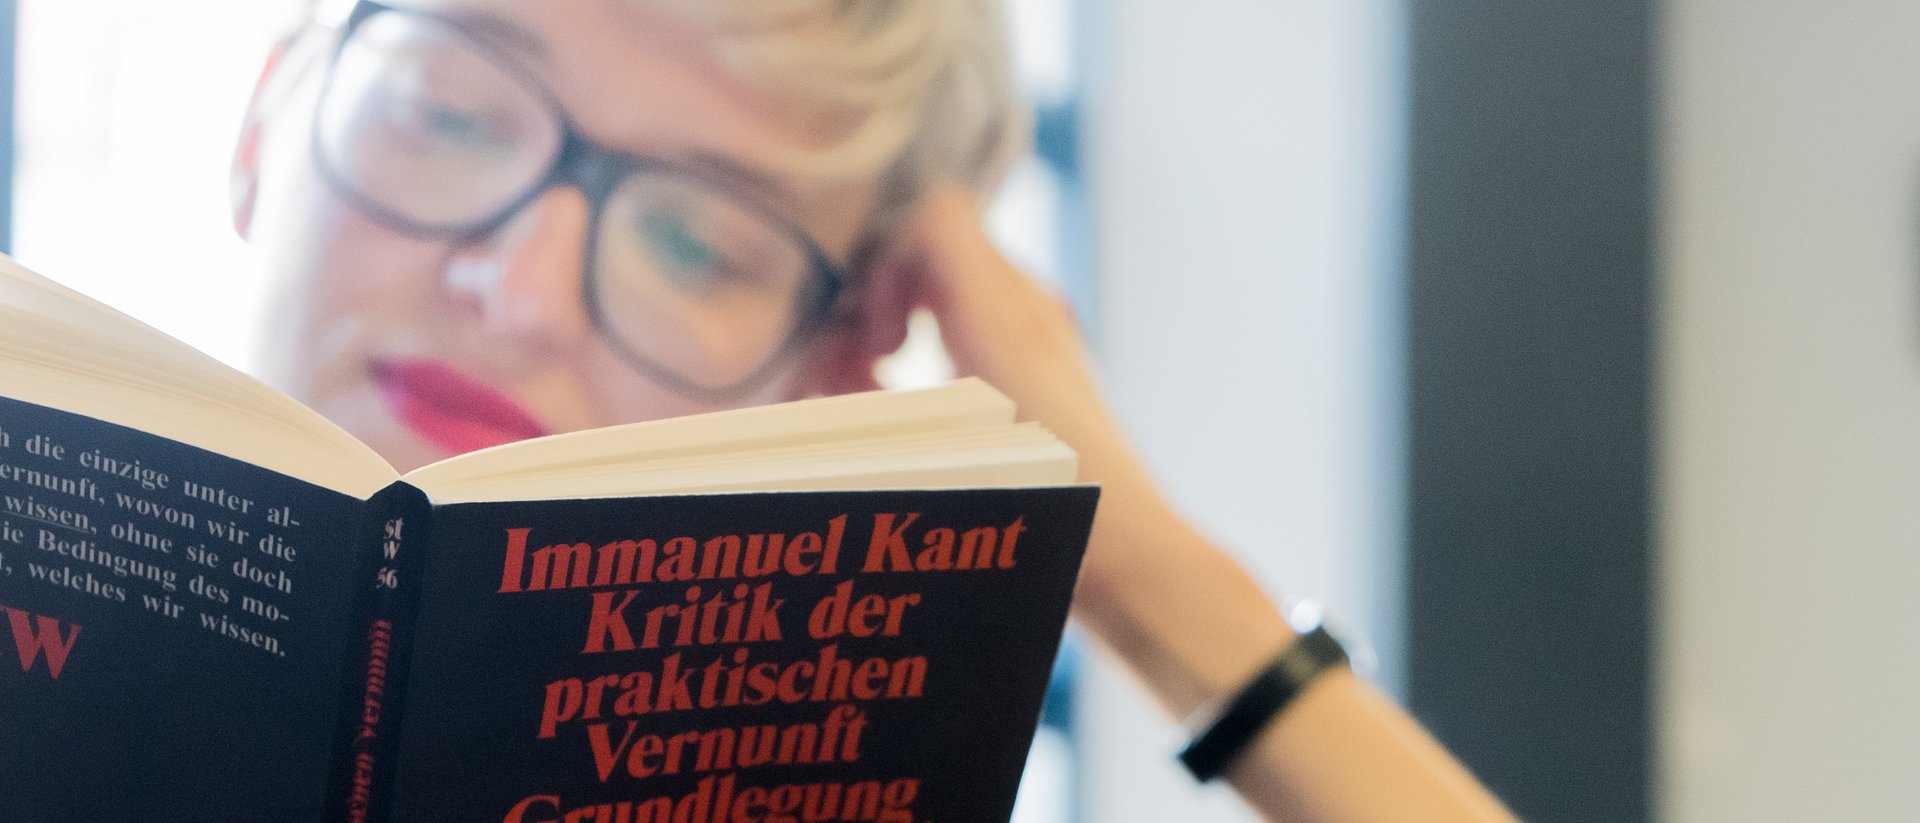 Studentin liest ein Werk von Immanuel Kant